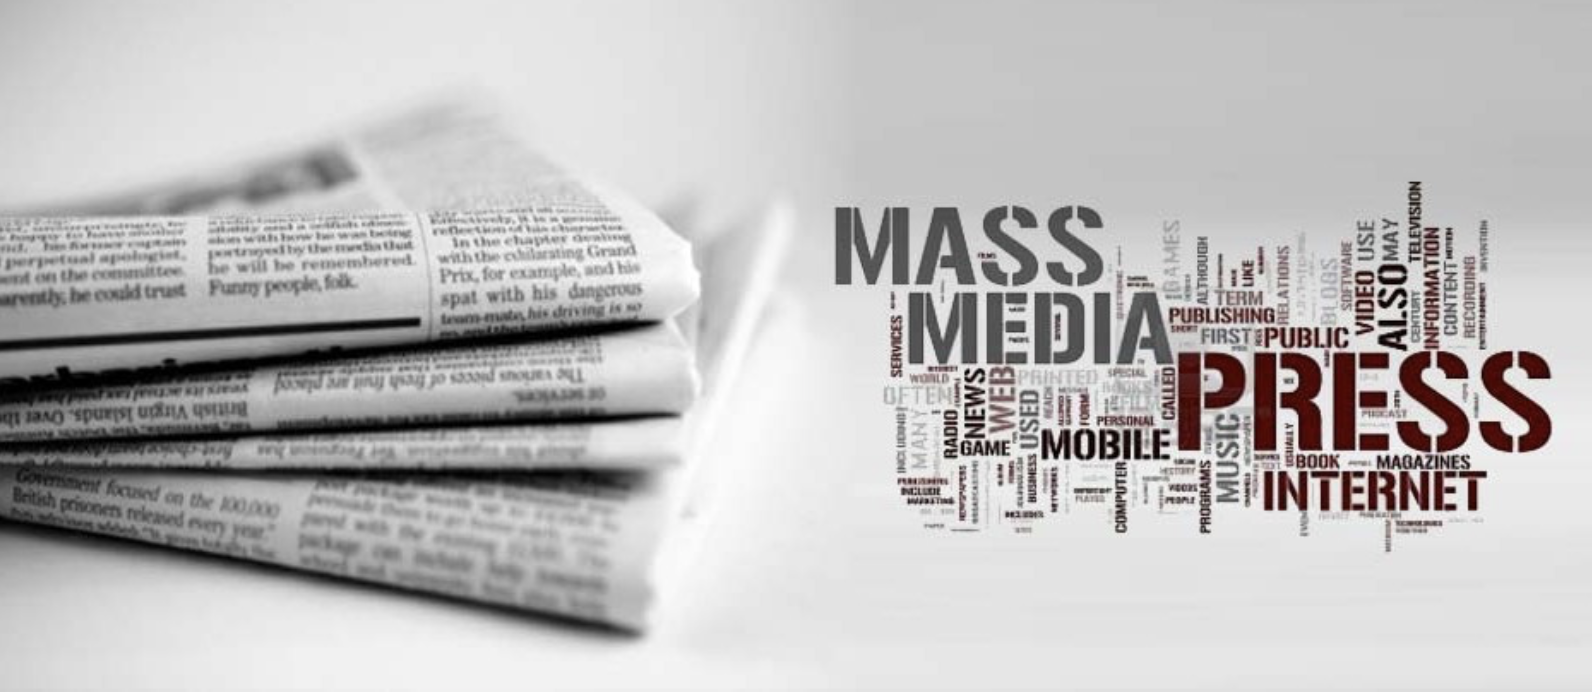 Средства массовой информации и безопасности